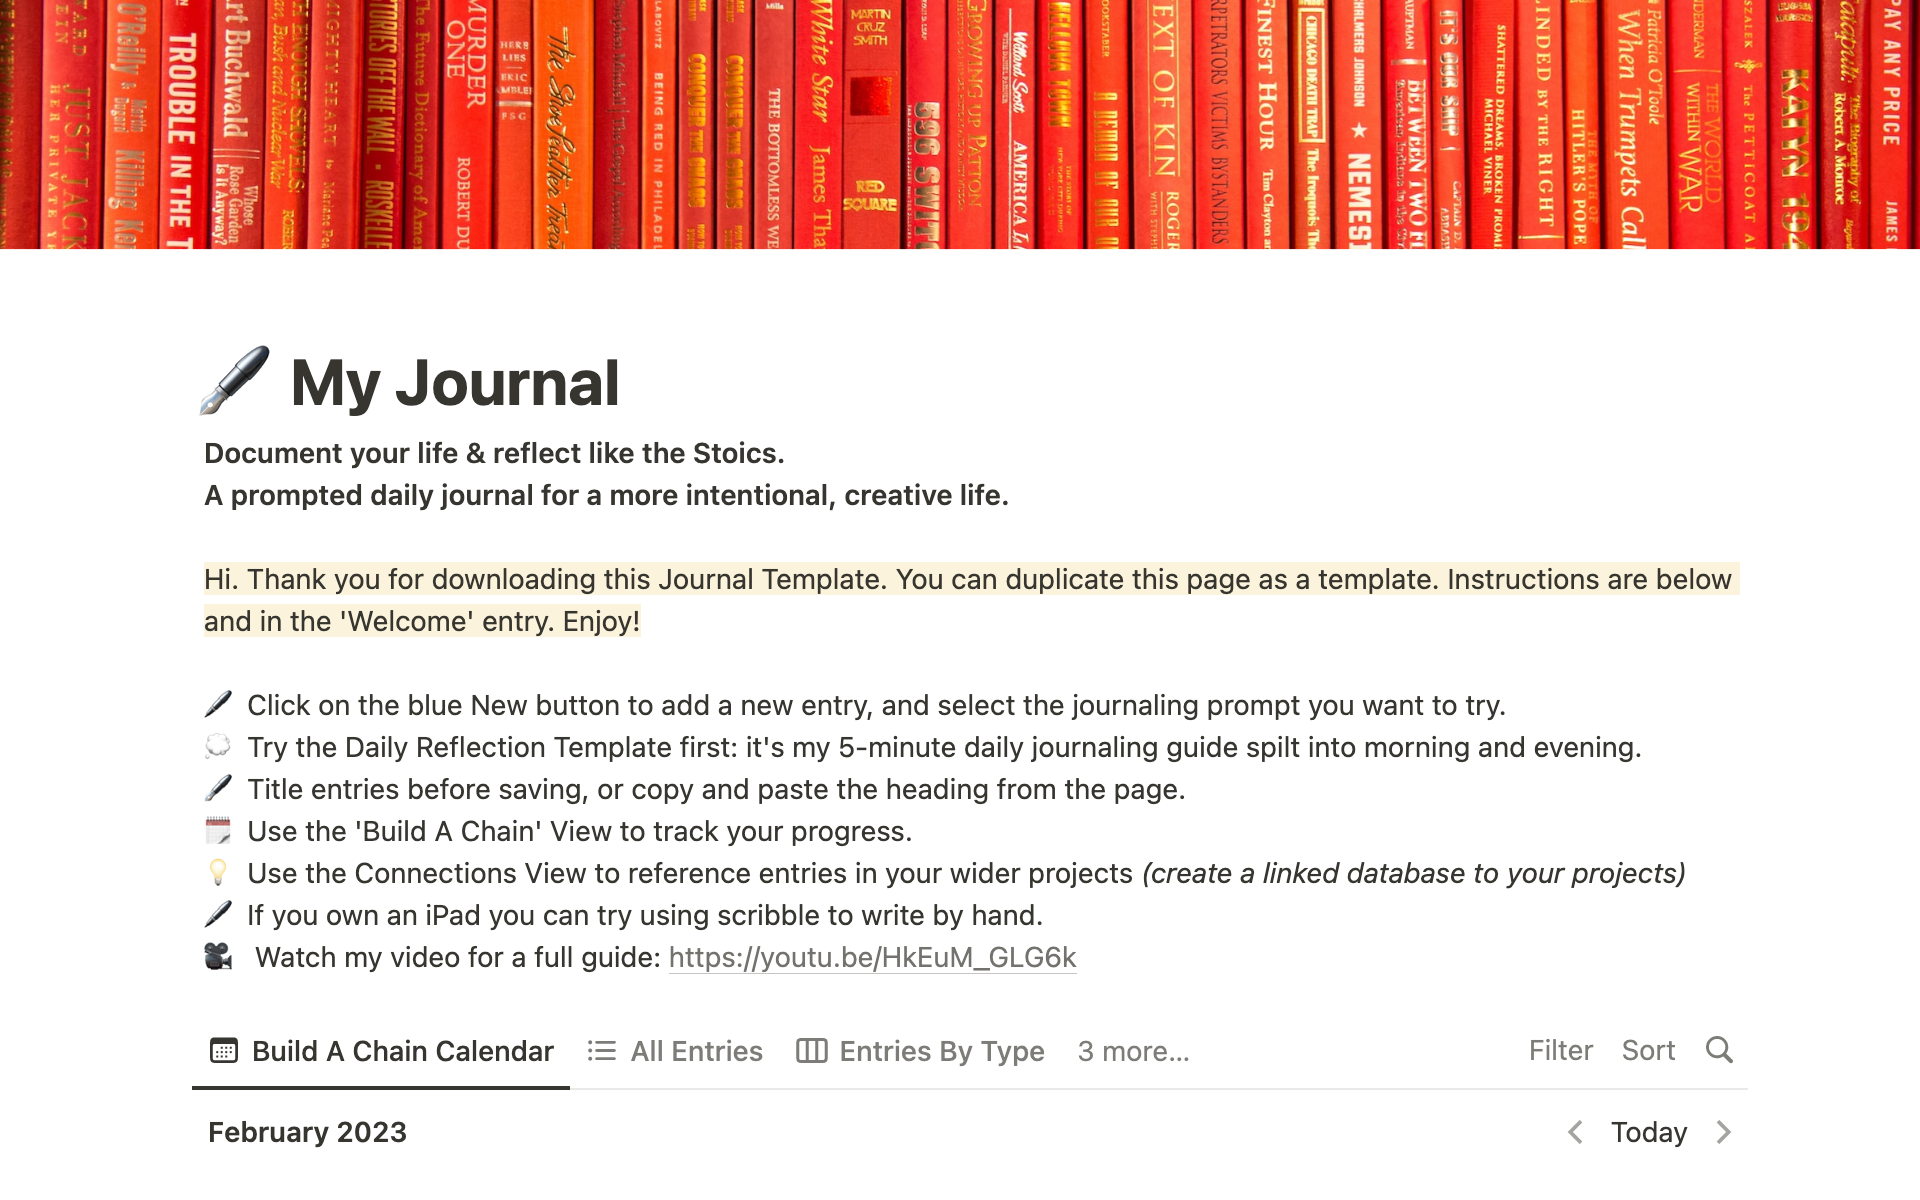 En förhandsgranskning av mallen för A Stoic Notion: The Prompted Digital Journal